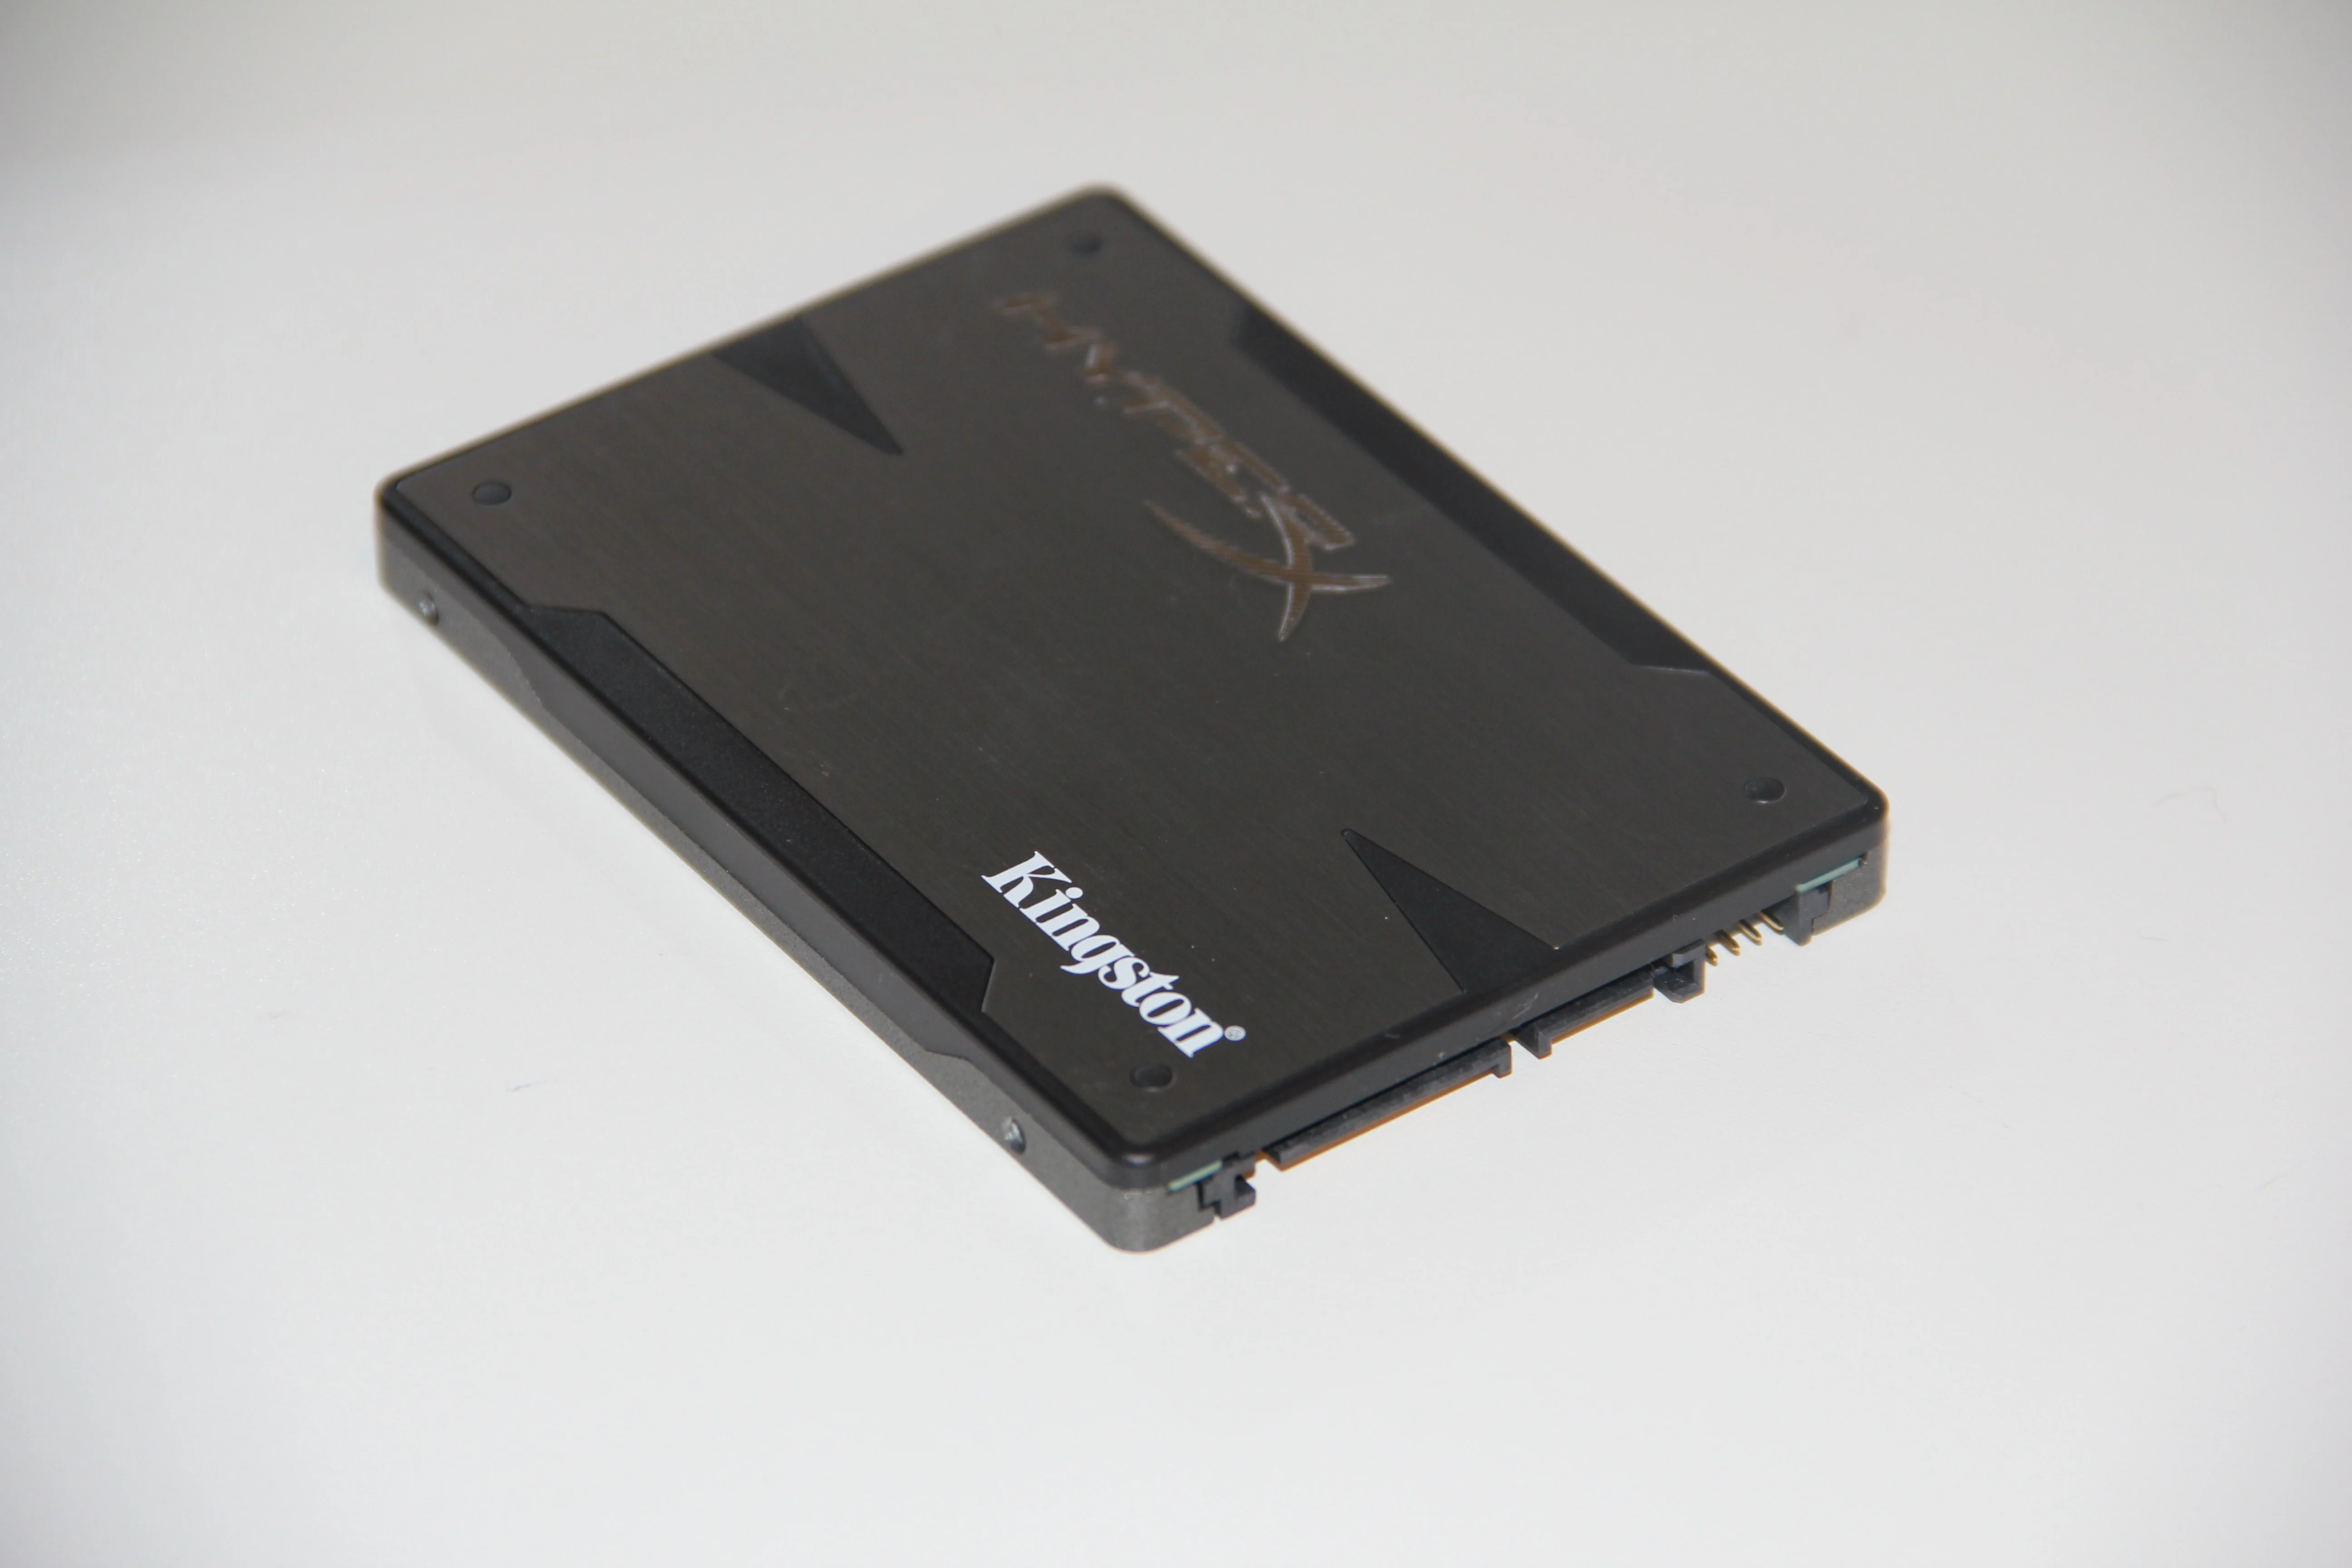 Горячее железо: Kingston HyperX 3K SSD 480GB - фото 3